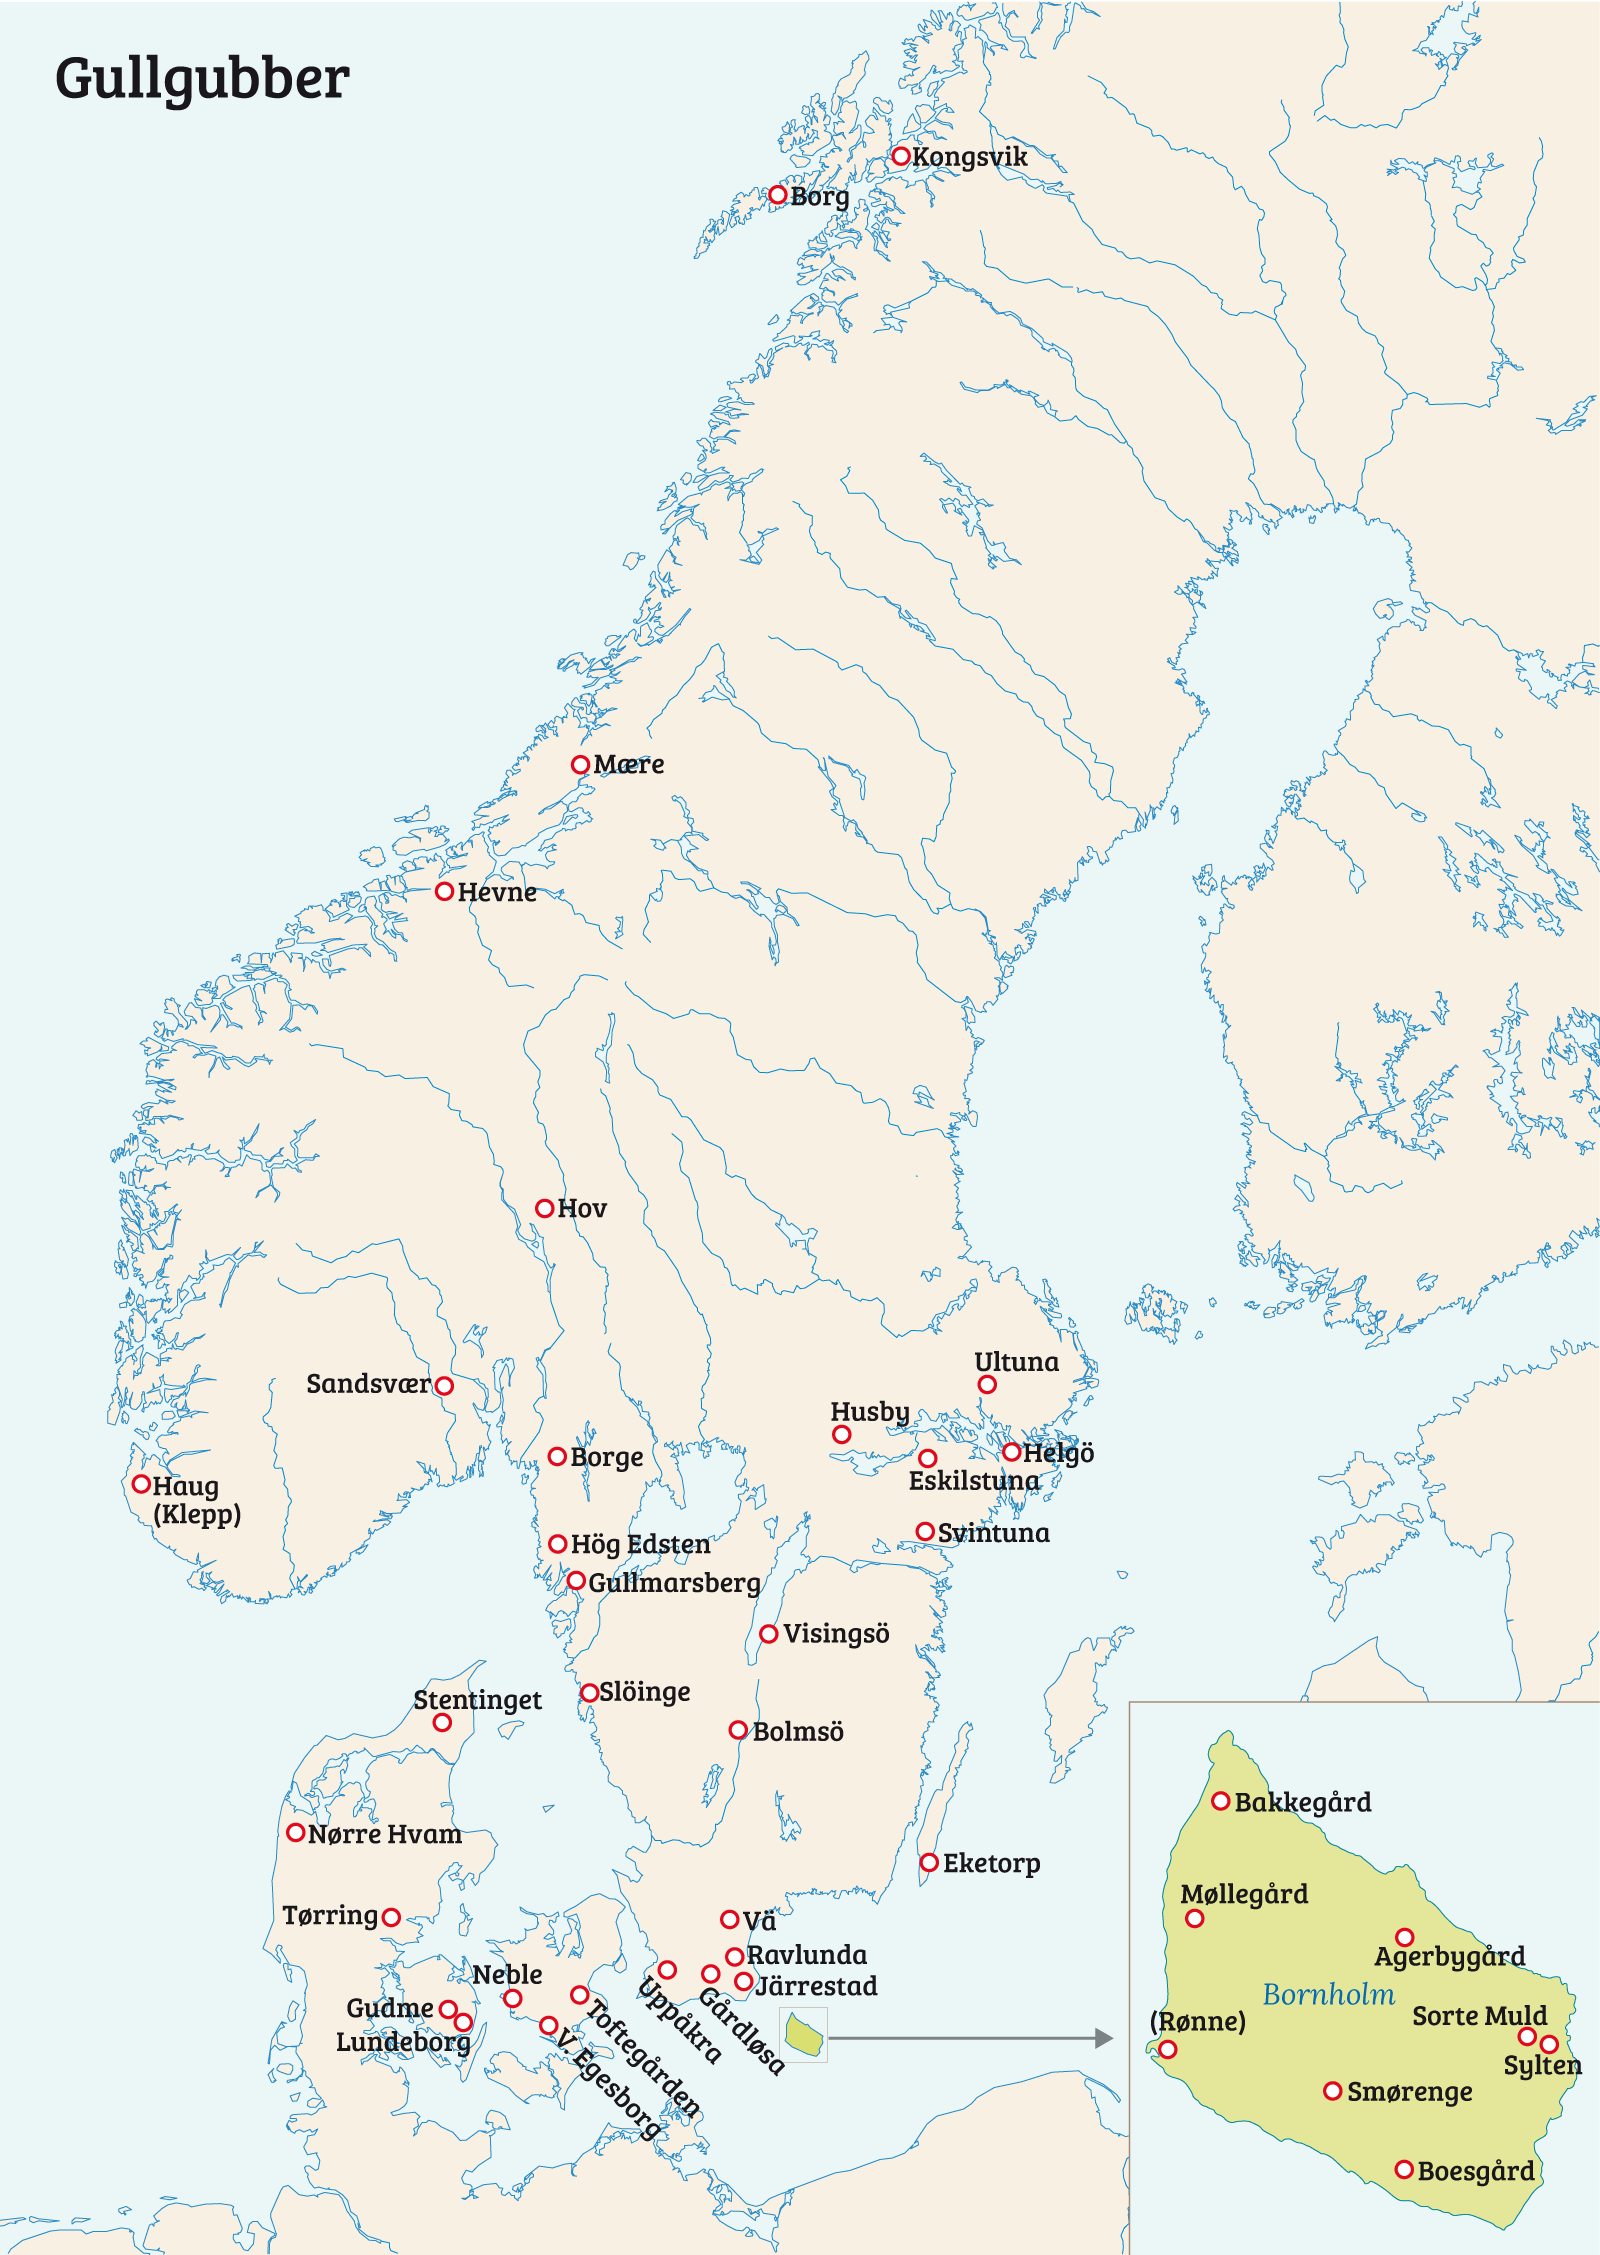 Kart som viser funn av Gulgubber i Norden. De fleste er konsentrert rundt Sør-Sverige og Danmark, ellers spredt i Norge